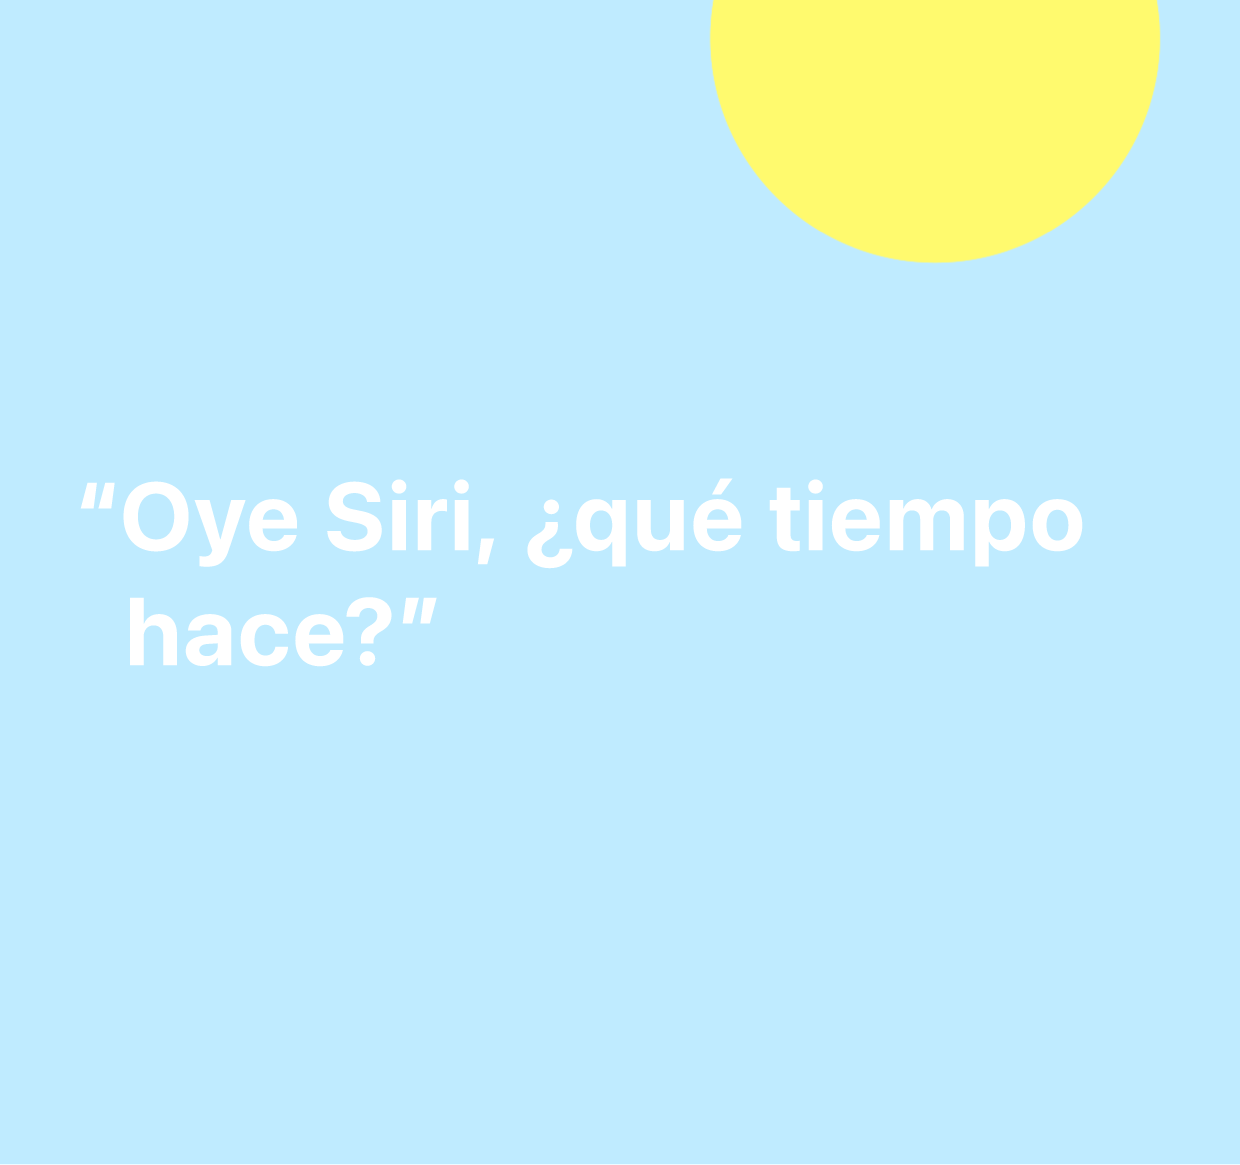 Ilustración con la frase “Oye Siri, ¿qué tiempo hace?”.